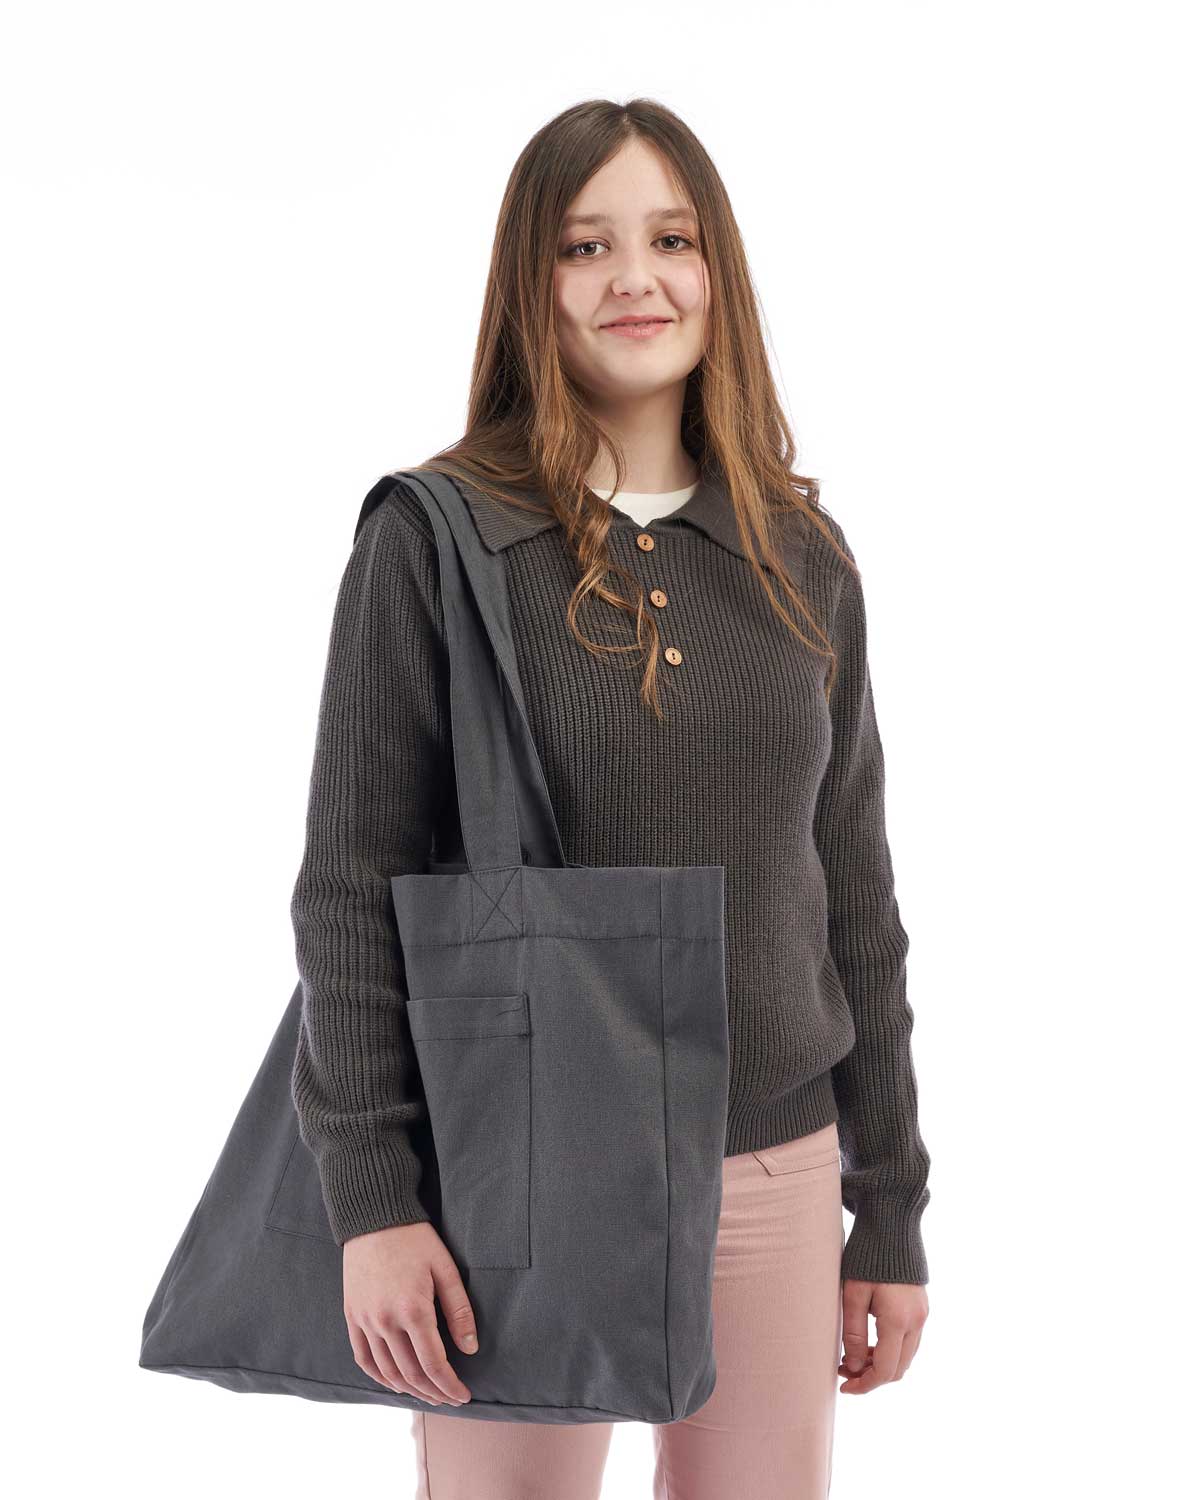 Jersey de niña Mishti de punto en color gris oscuro con cuello y botones de madera